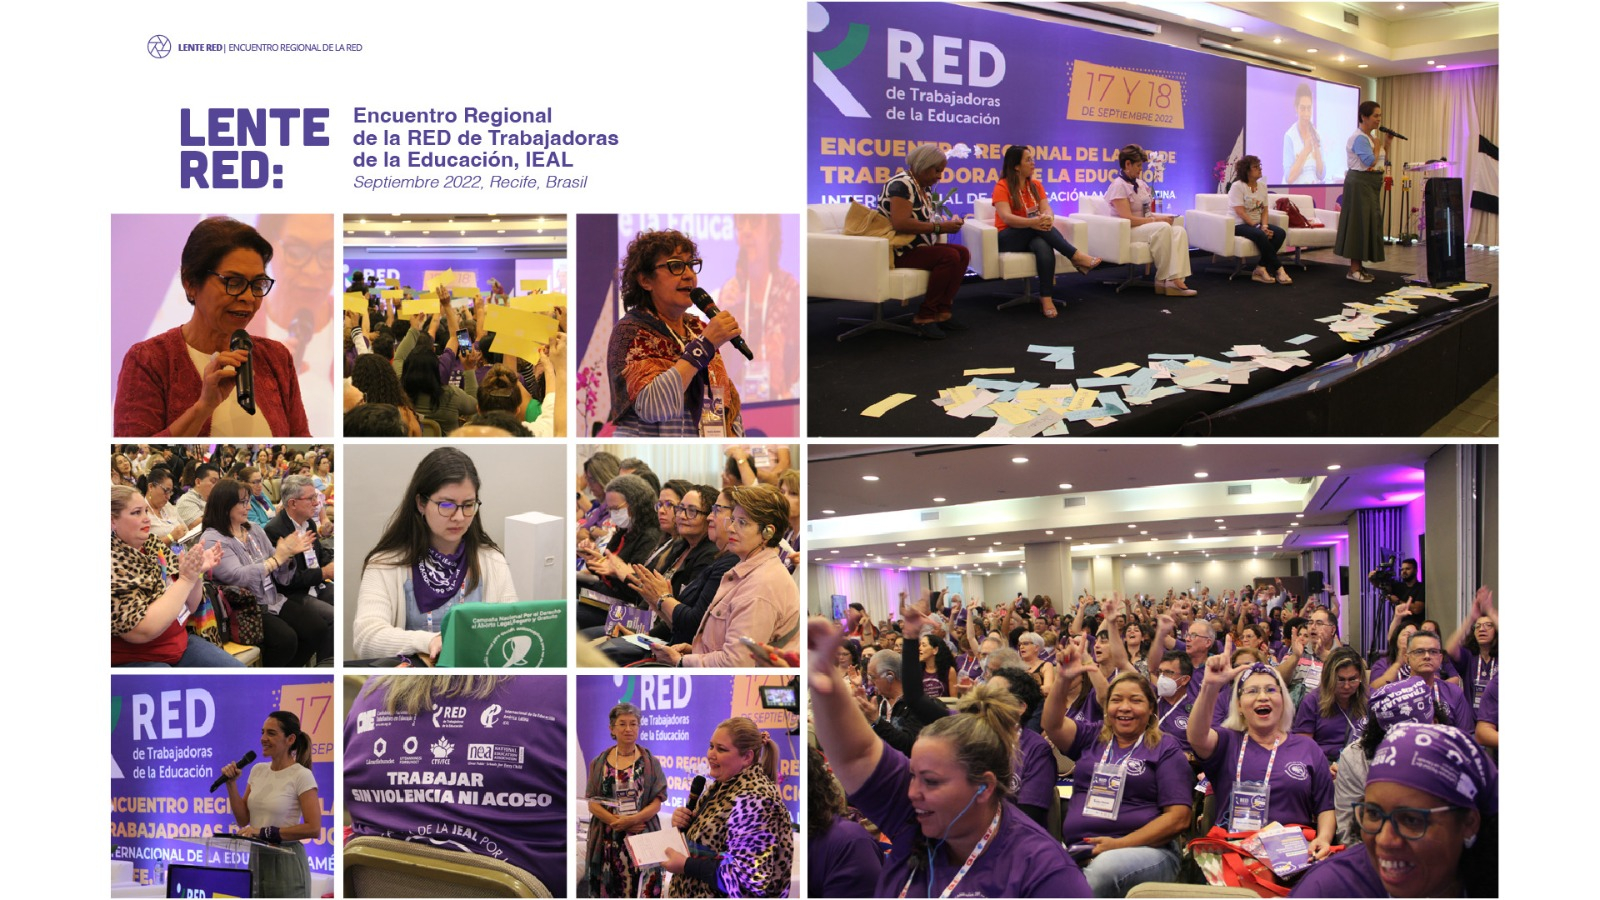 LENTE RED | Encuentro Regional de la RED de Trabajadoras de la Educación, IEAL